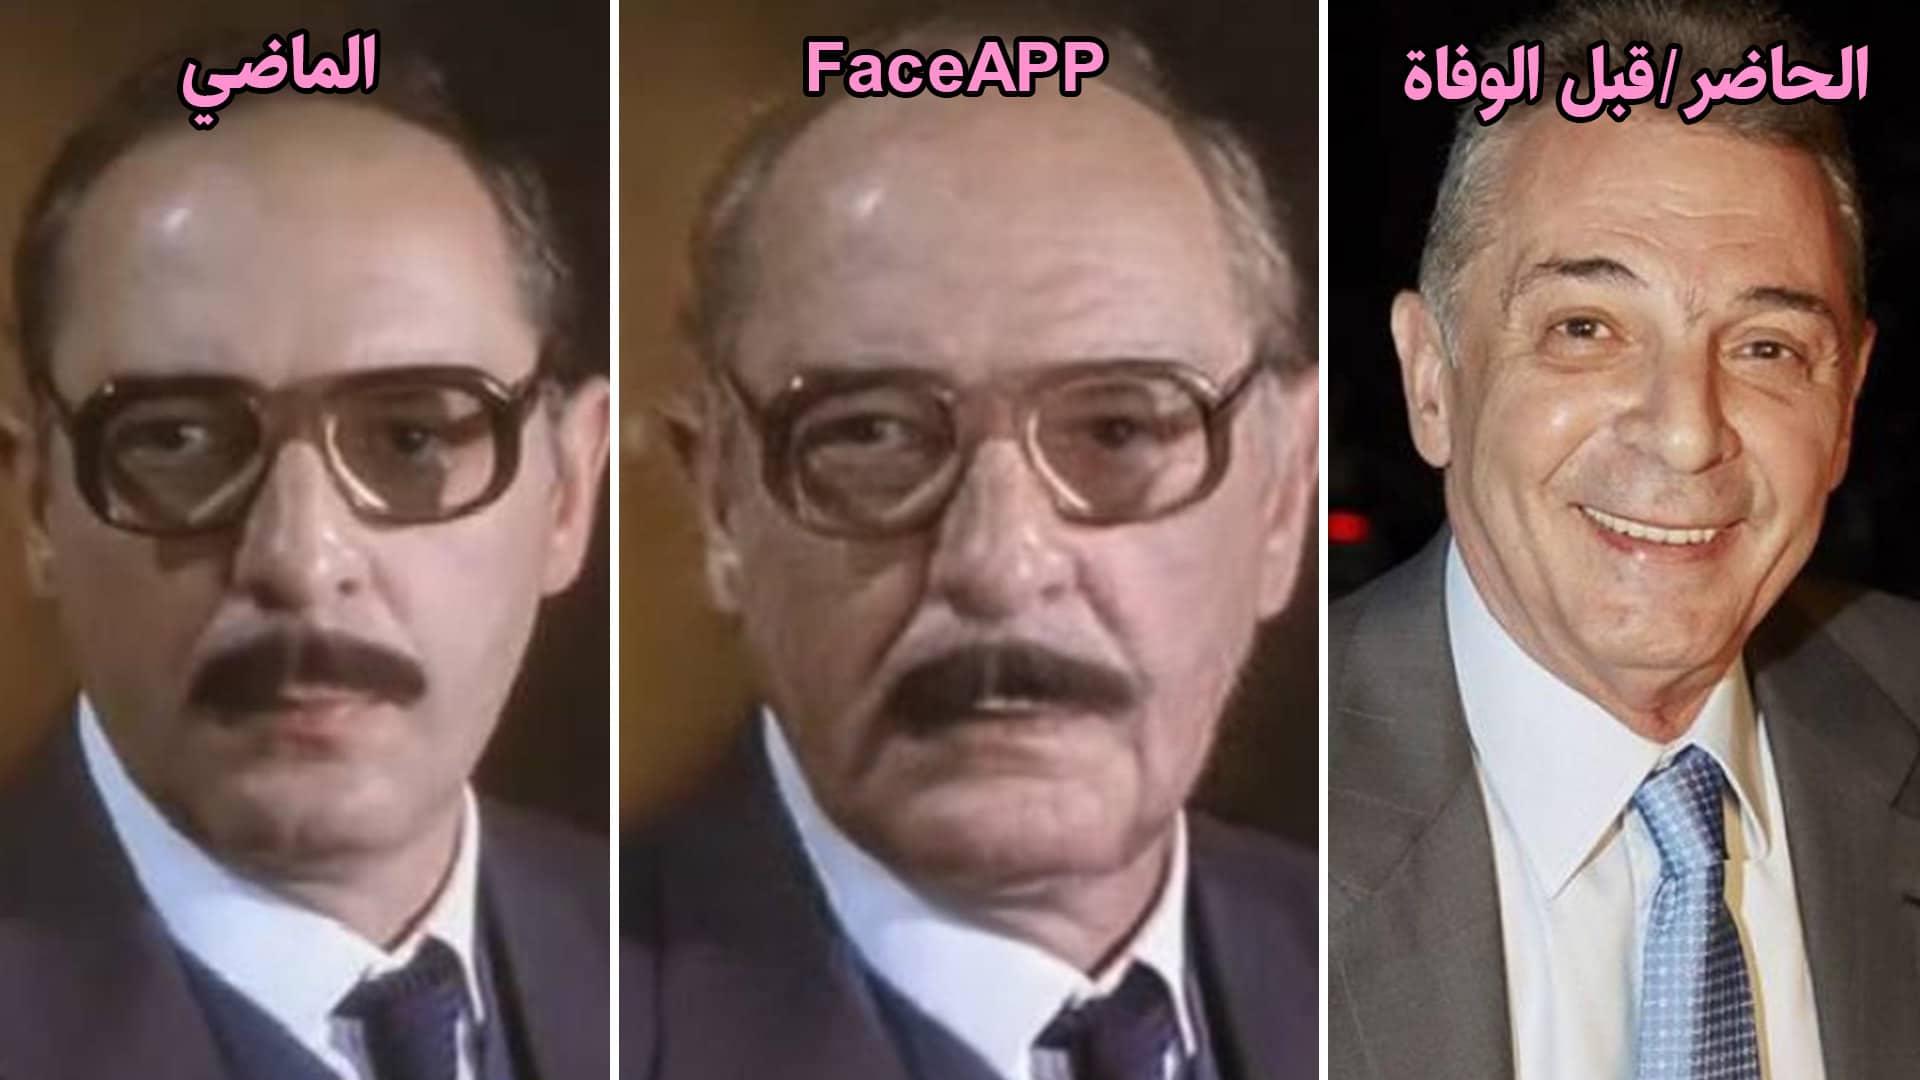 محمود حميدة - face app